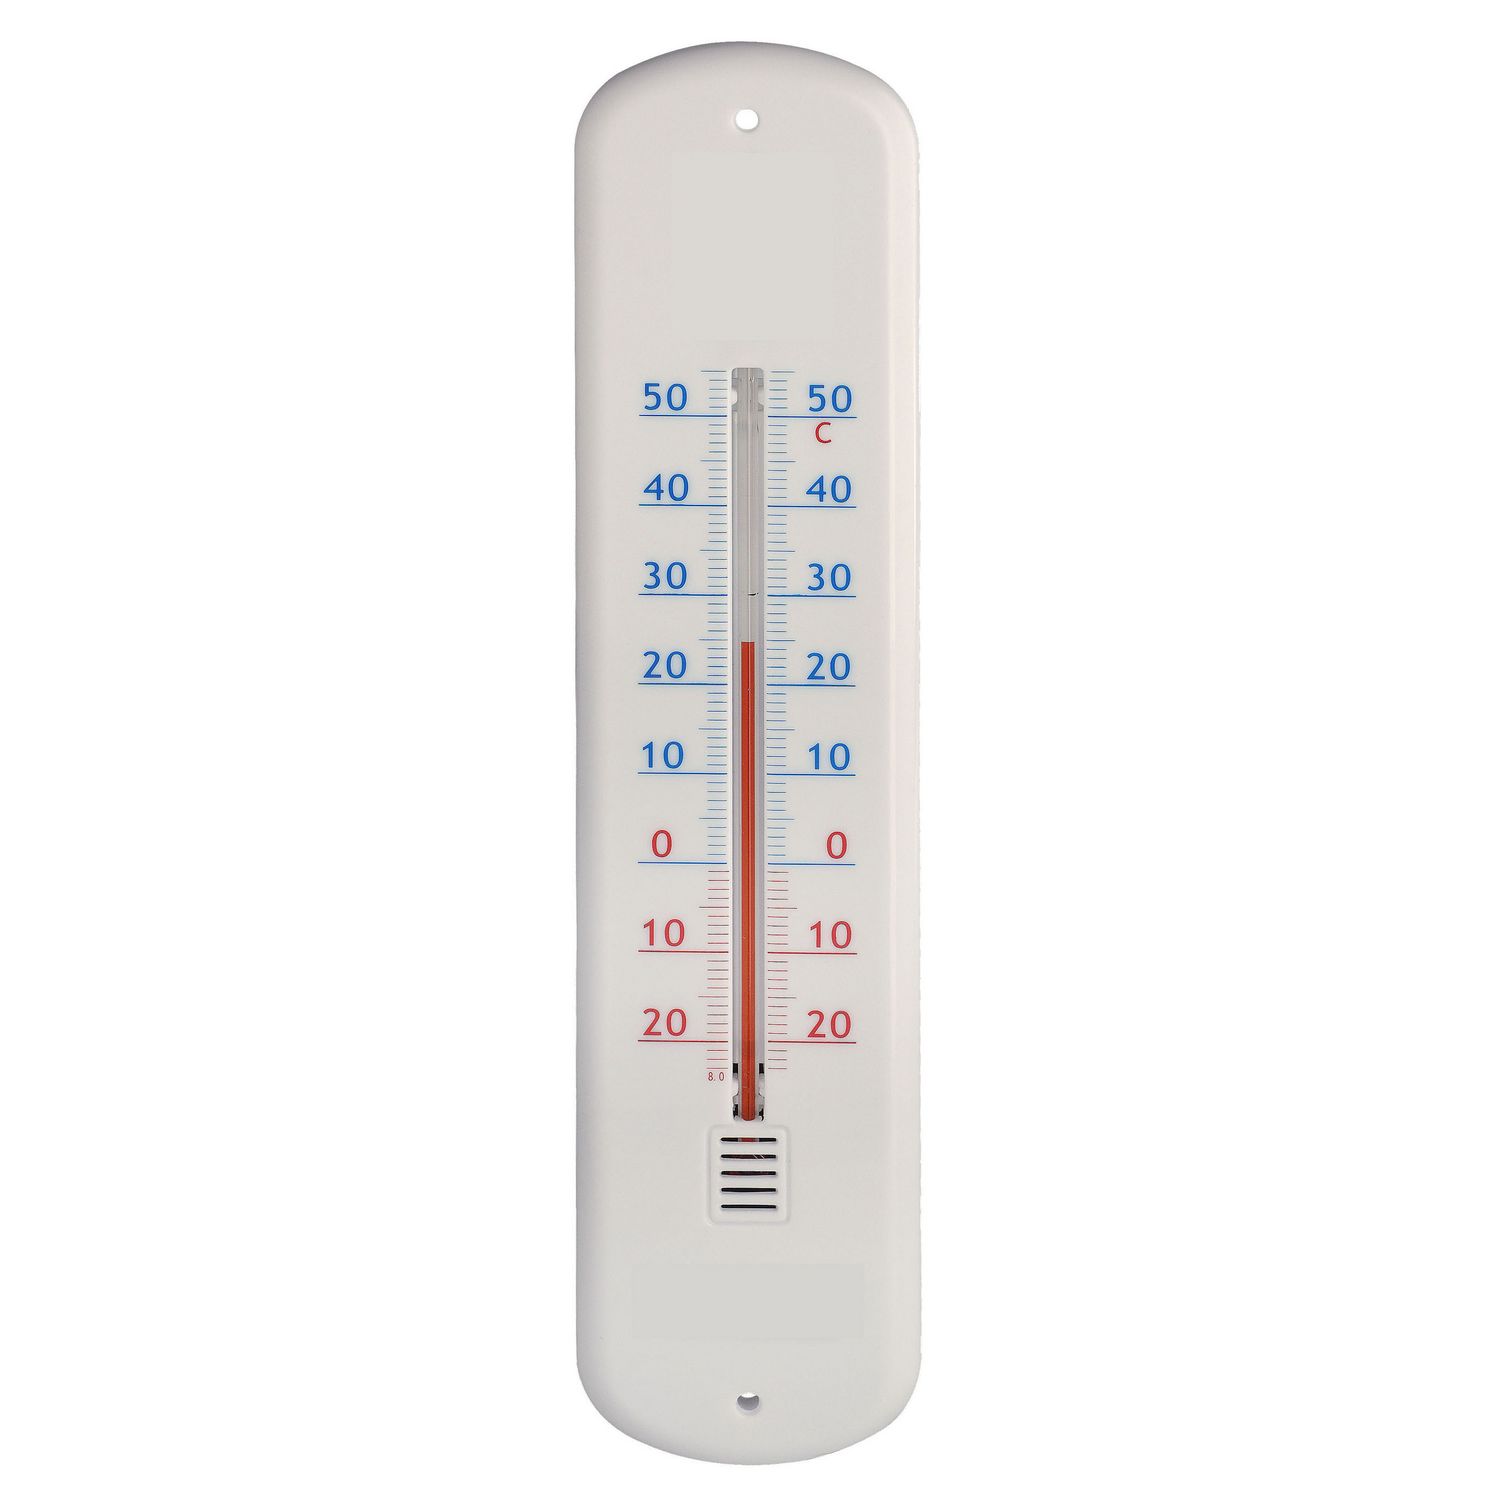 Thermomètre intérieur ou extérieur INOVALLEY Z500